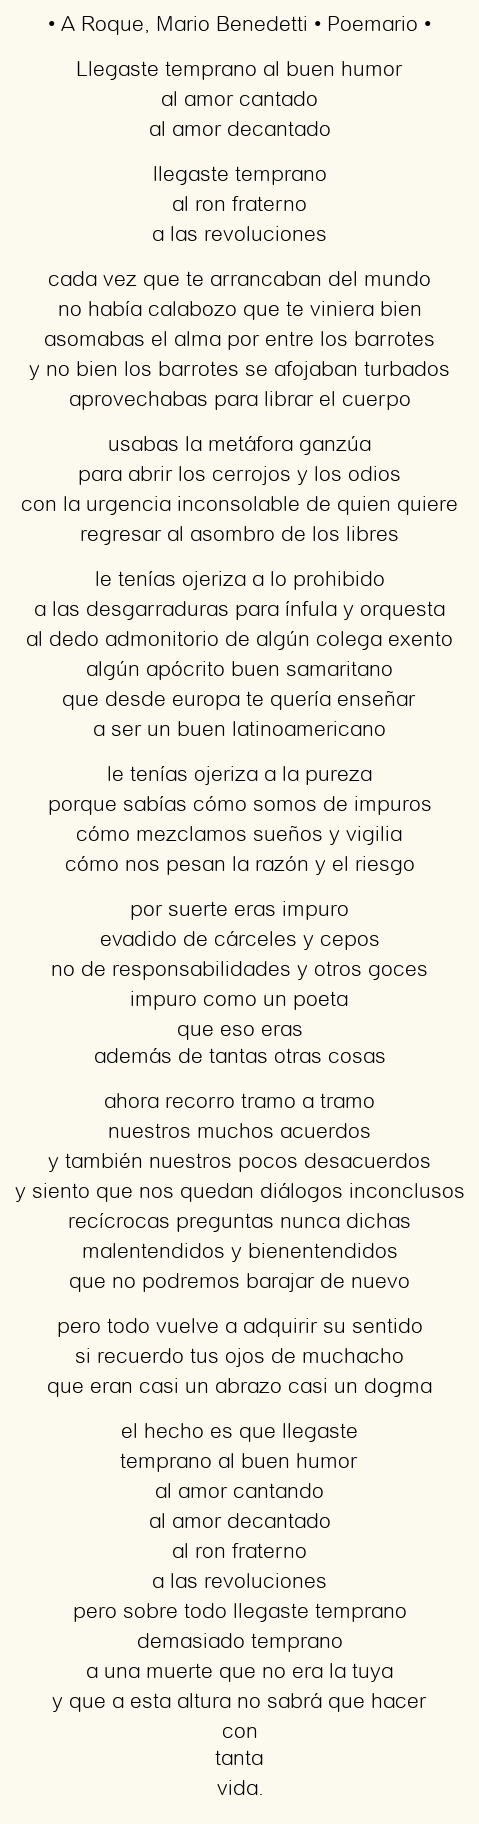 Imagen con el poema A Roque, por Mario Benedetti